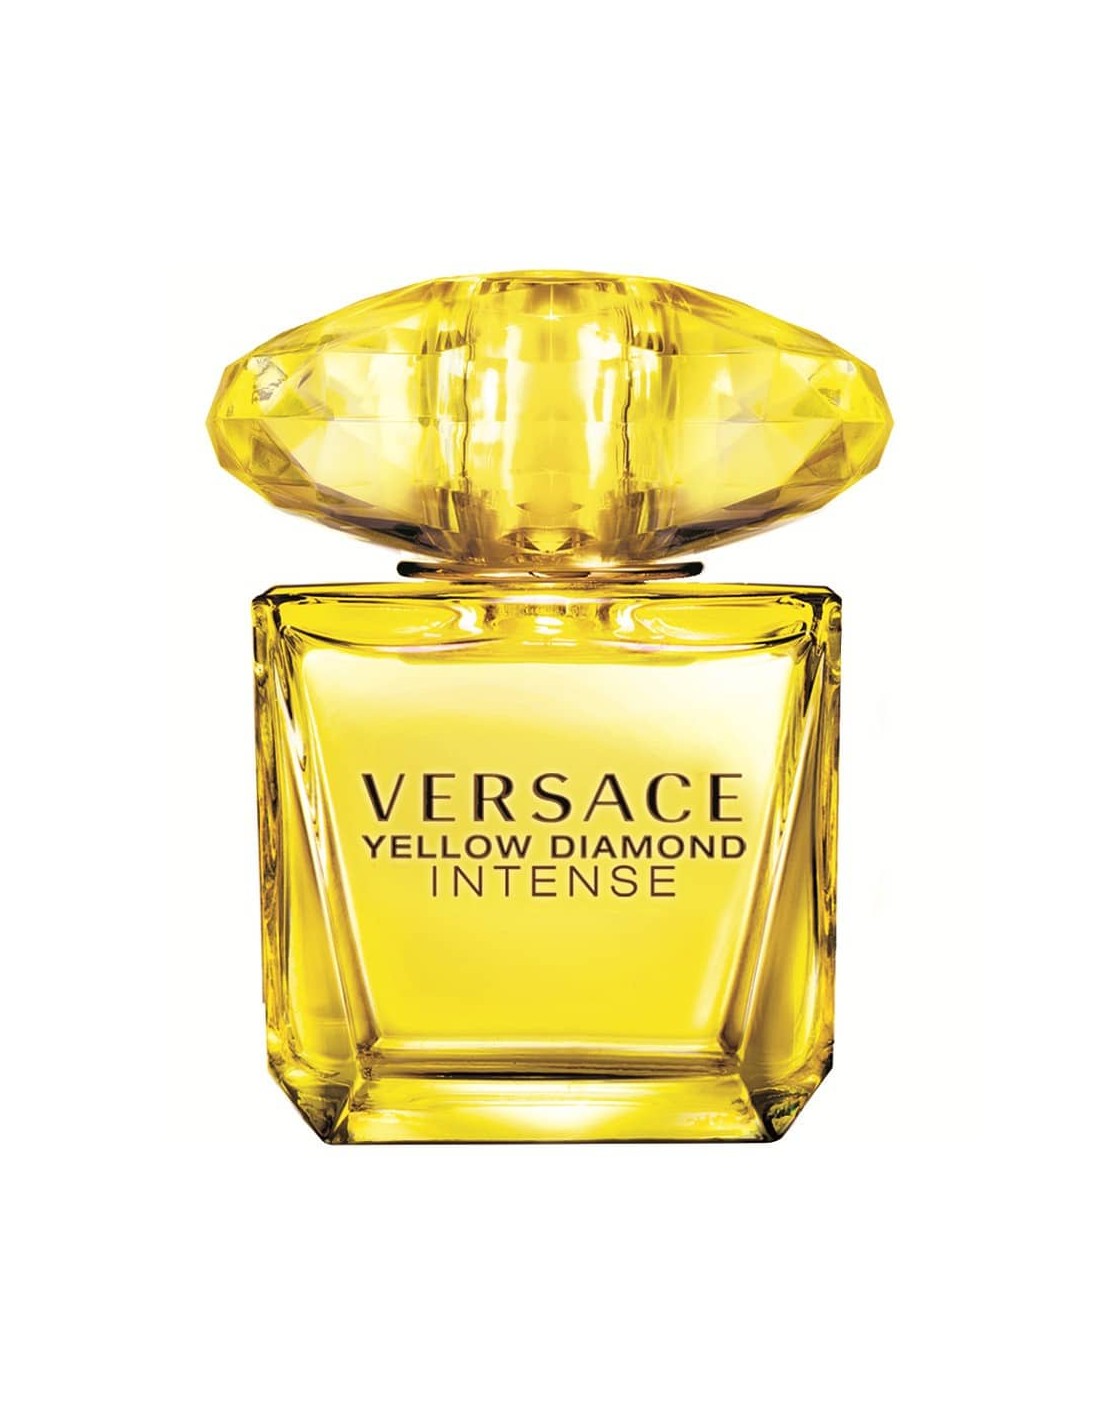 Versace Yellow Diamonds Intense Eau de parfum 90 ml Spray - TESTER